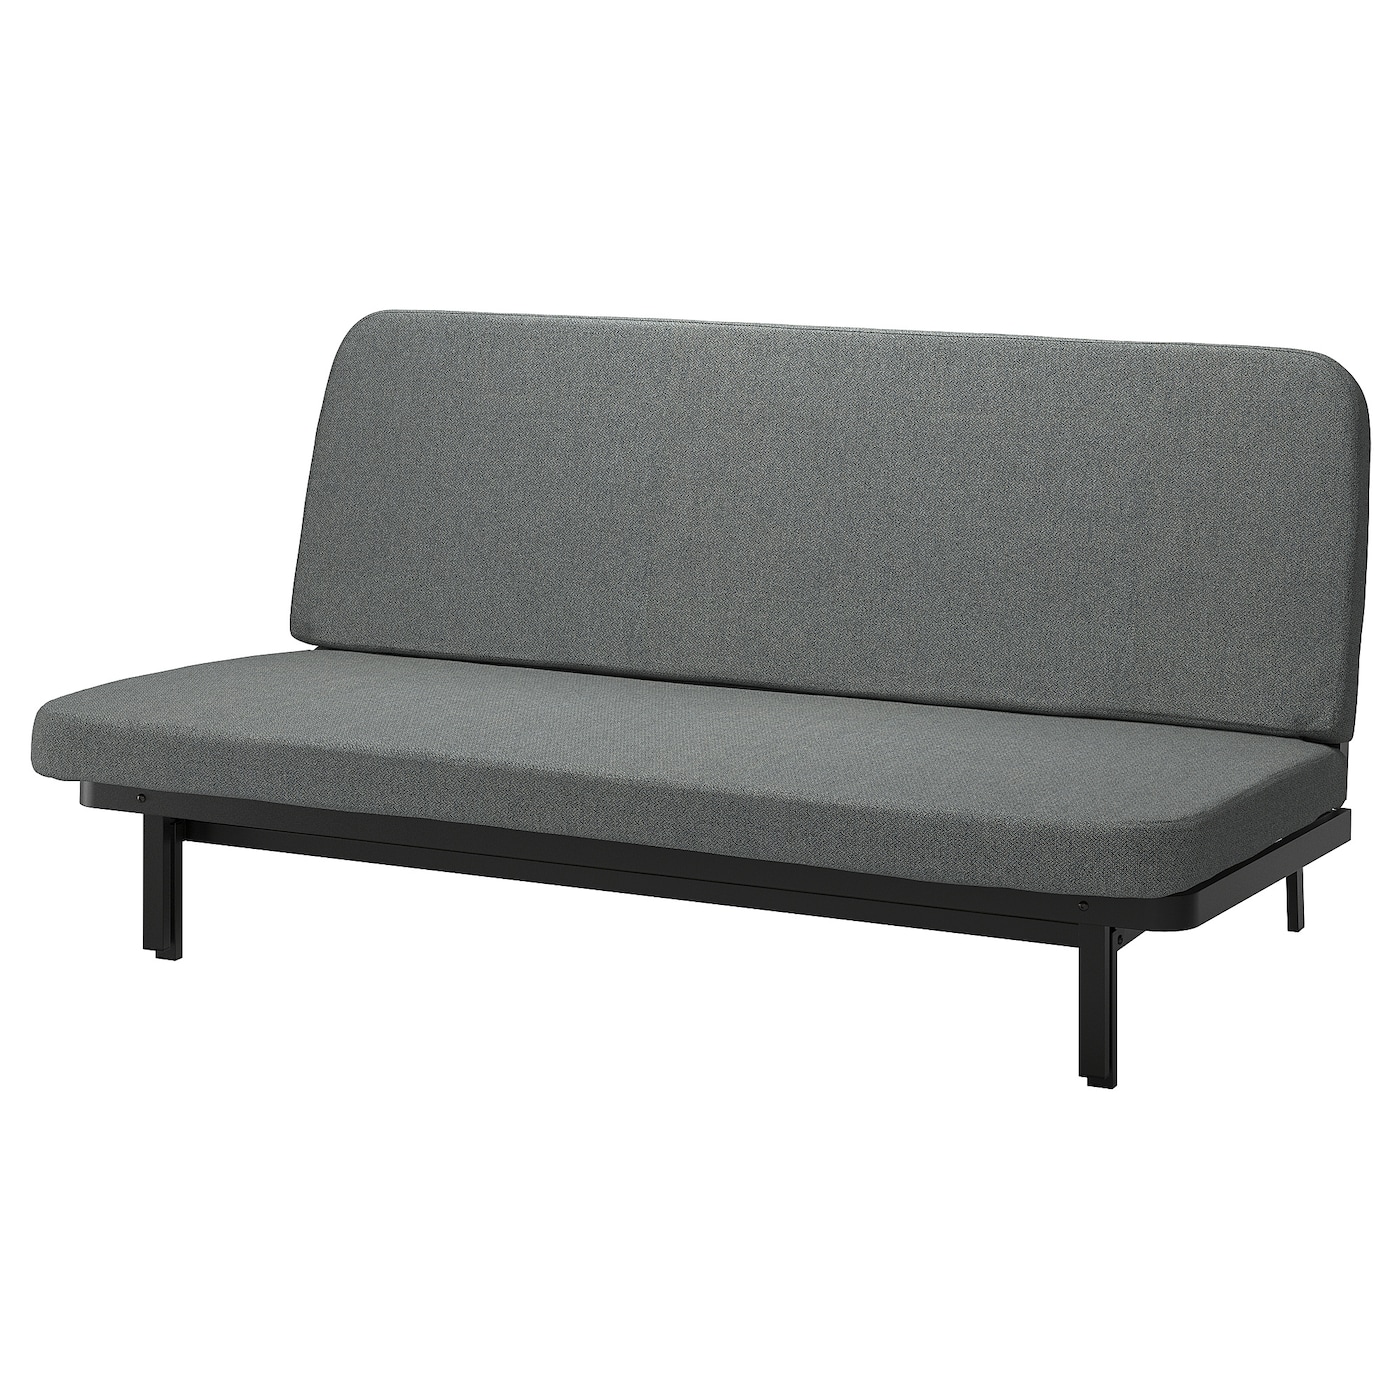 диван кровать тулон 3 торонто серый NYHAMN 3-местный диван-кровать, в комплекте пружинный матрас/Скартофта черный/светло-серый IKEA